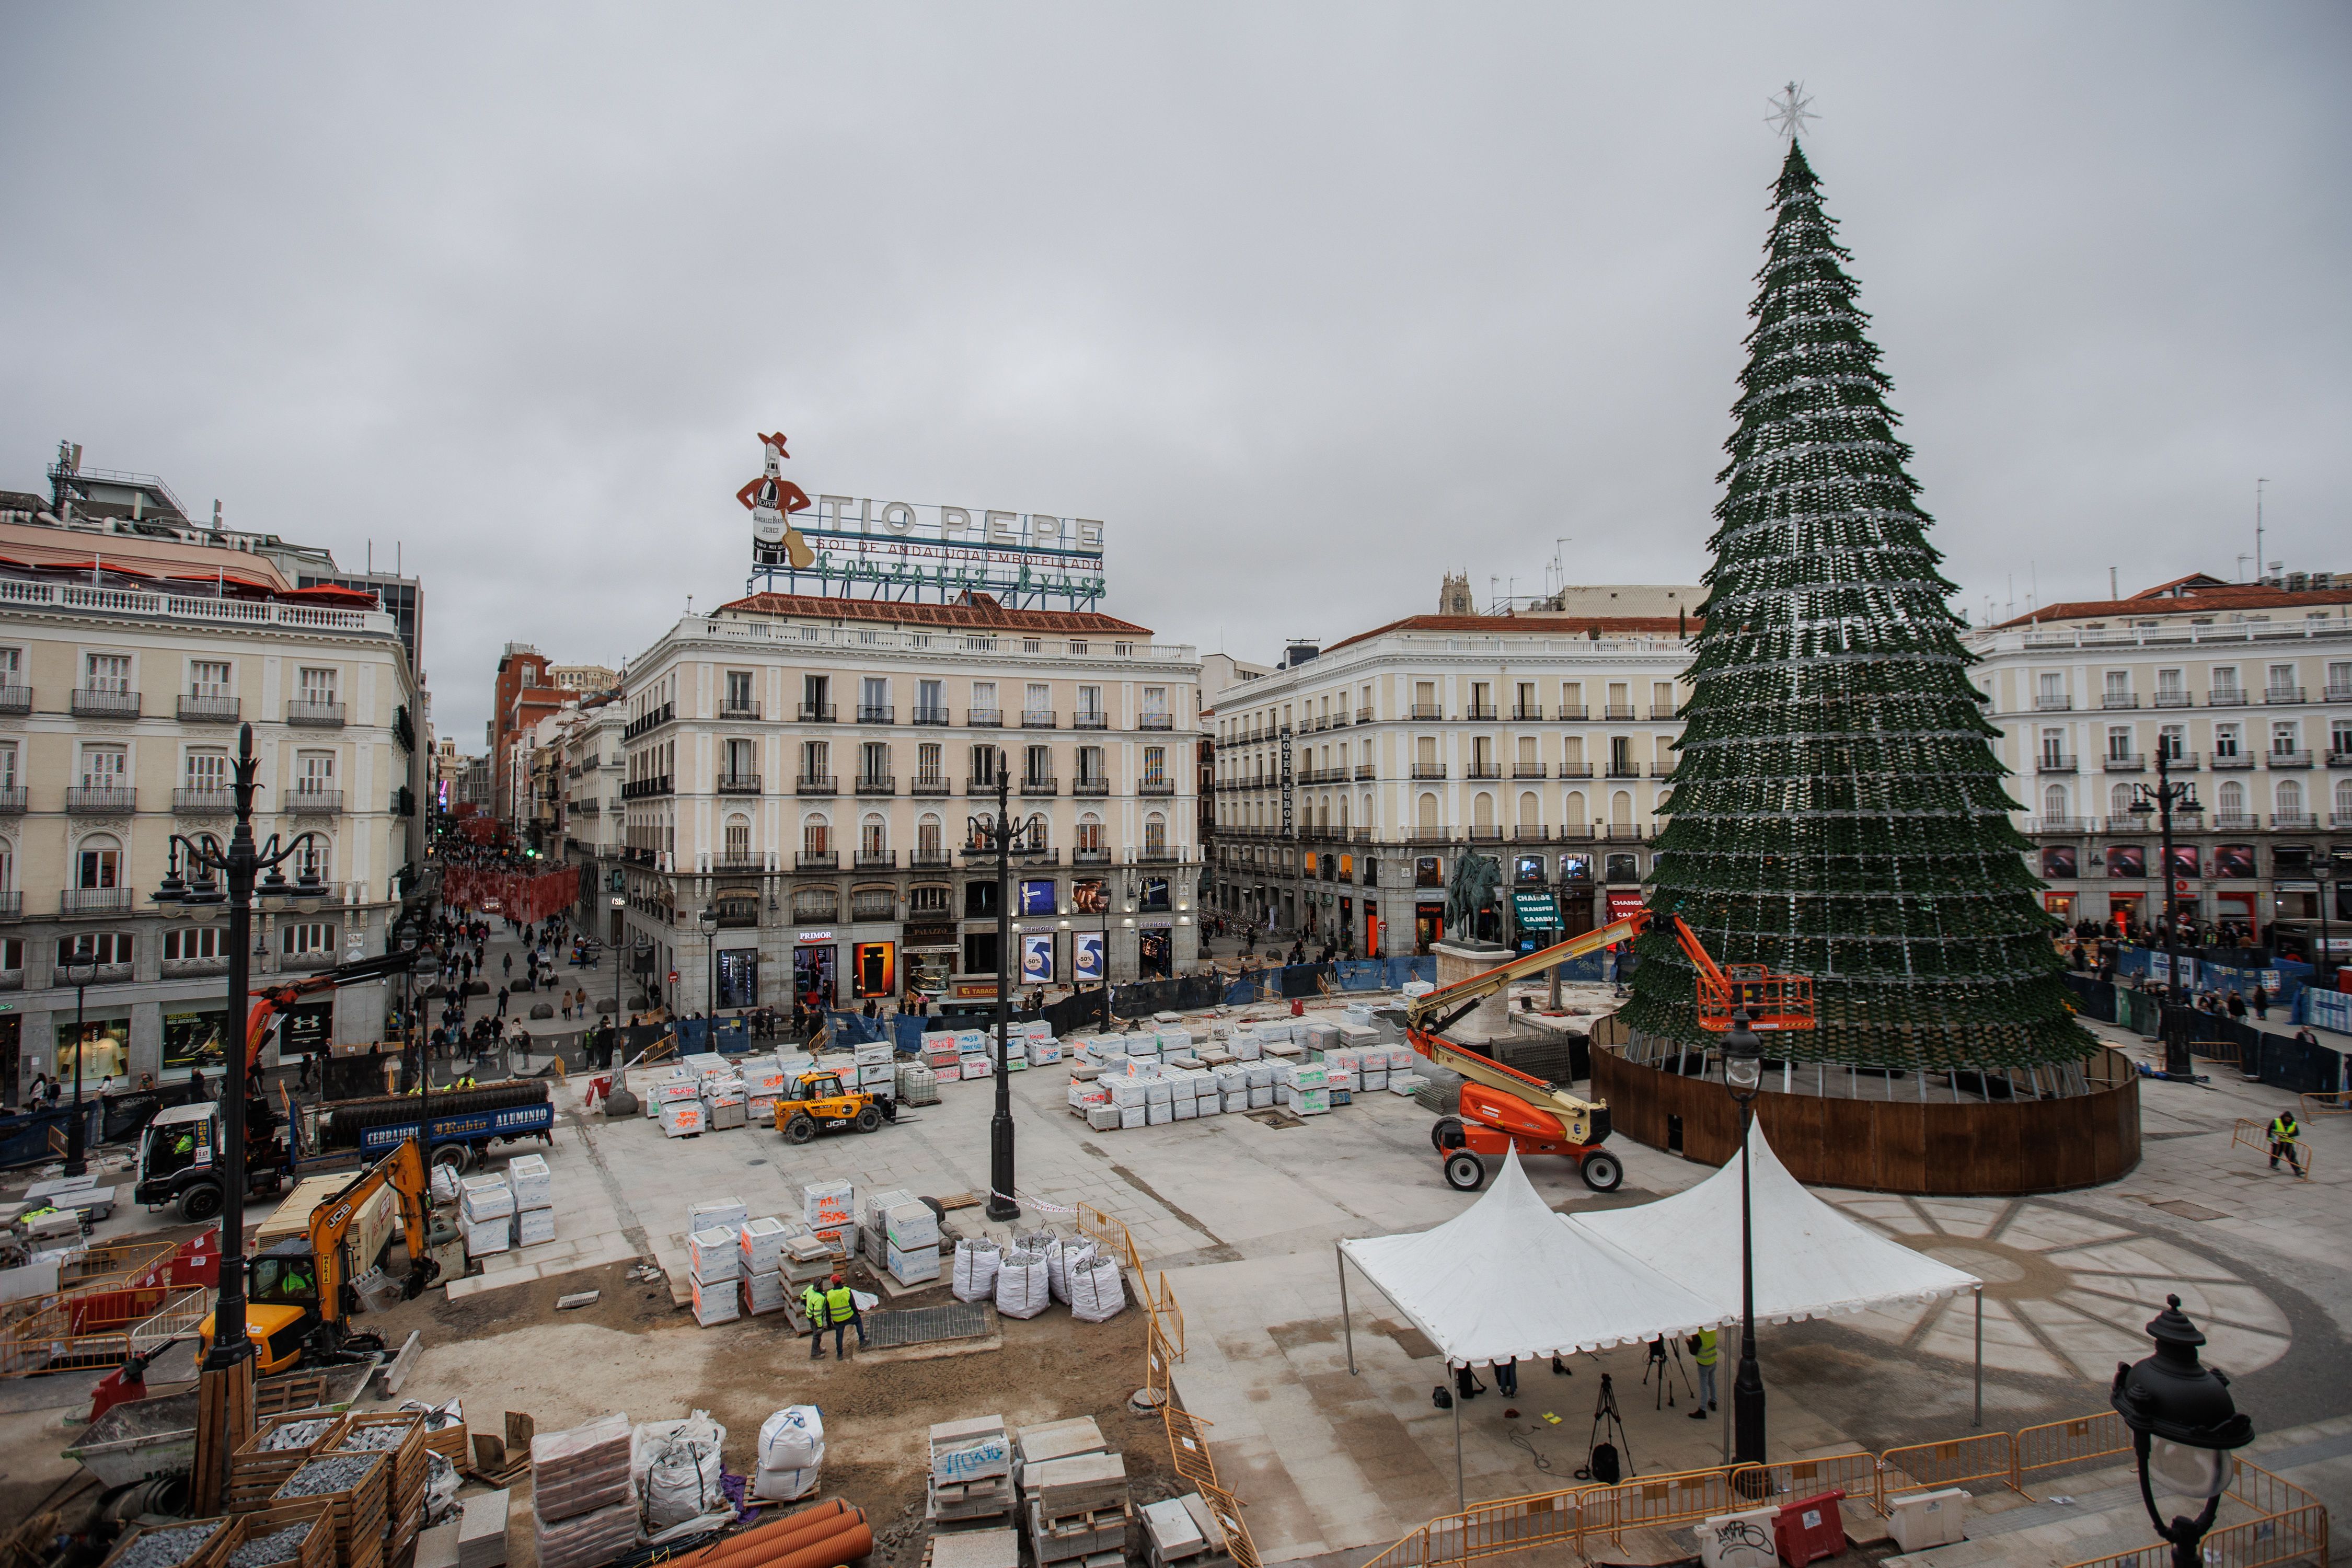 Habrá uvas en la Puerta del Sol: la plaza estará despejada para el Puente de la Constitución